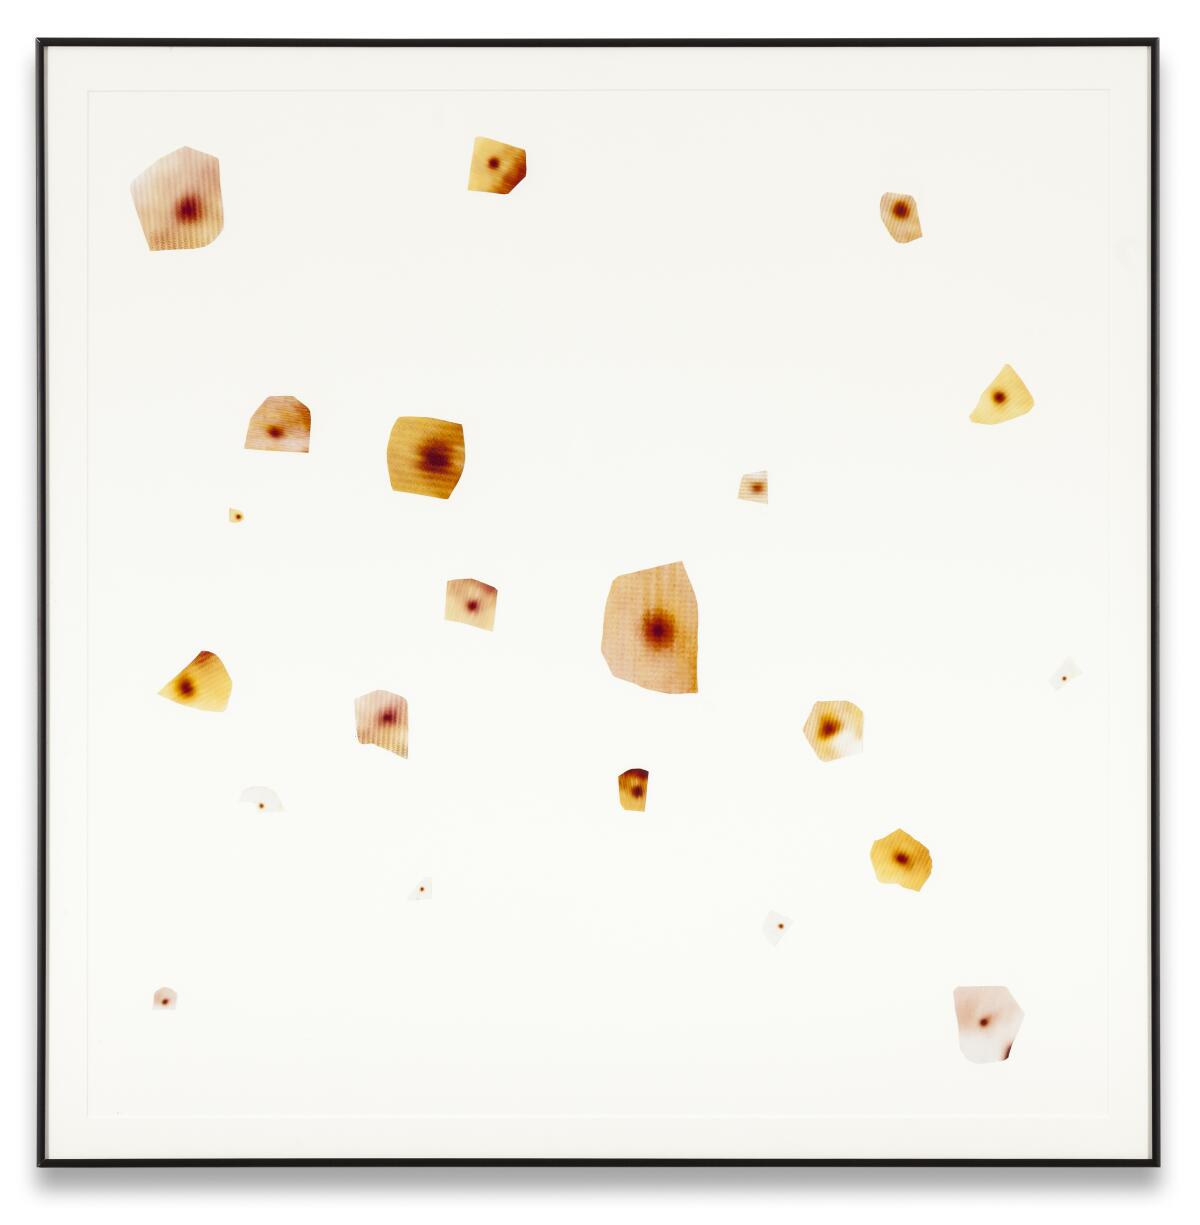 John Waters's artwork "21 Pasolini Pimples."